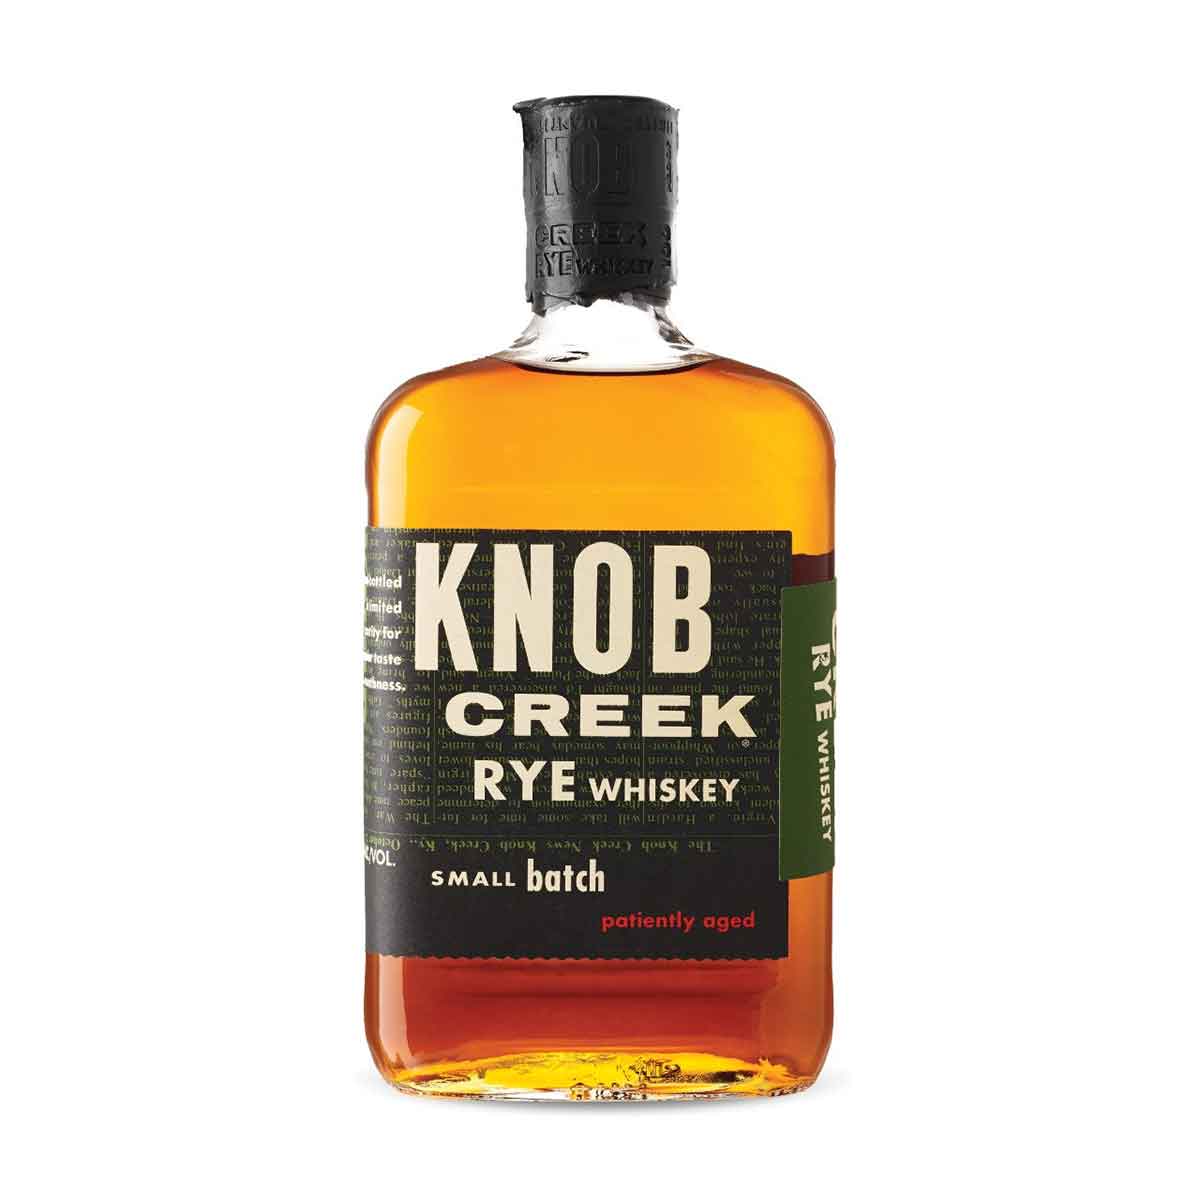 TAG Liquor Stores BC-KNOB CREEK RYE 750ML